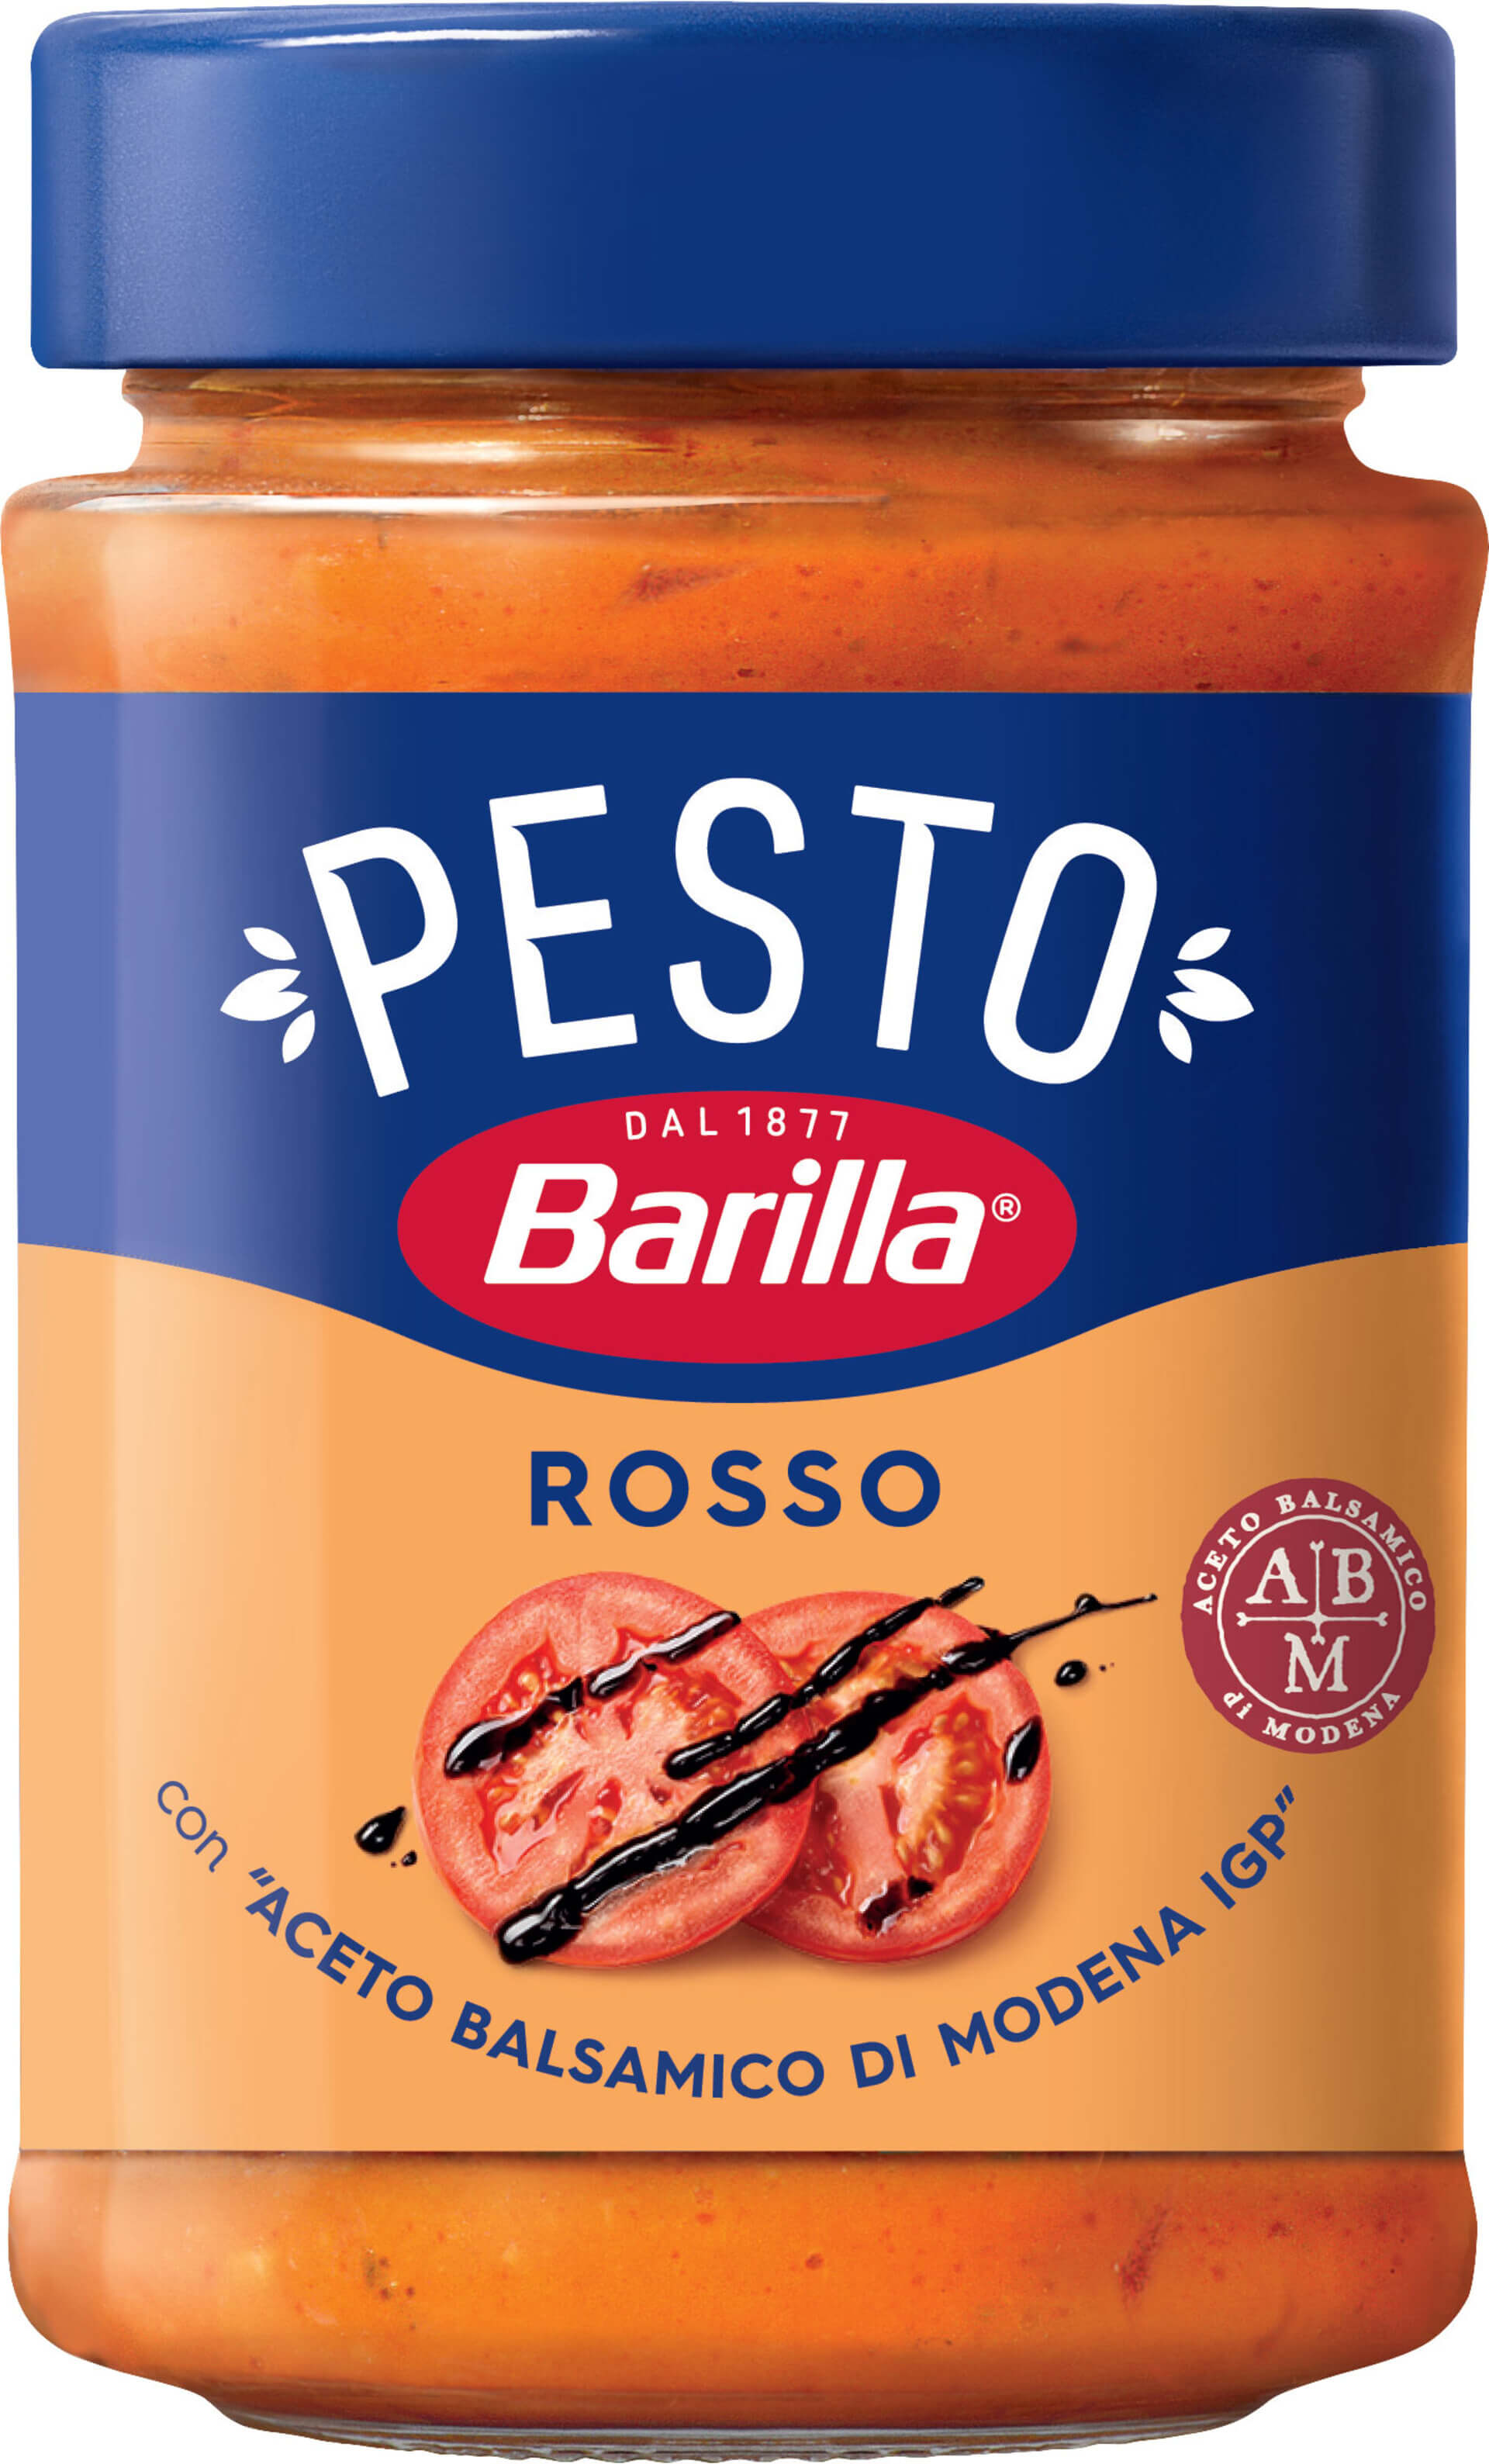 E-shop Barilla Pesto Rosso 200 g